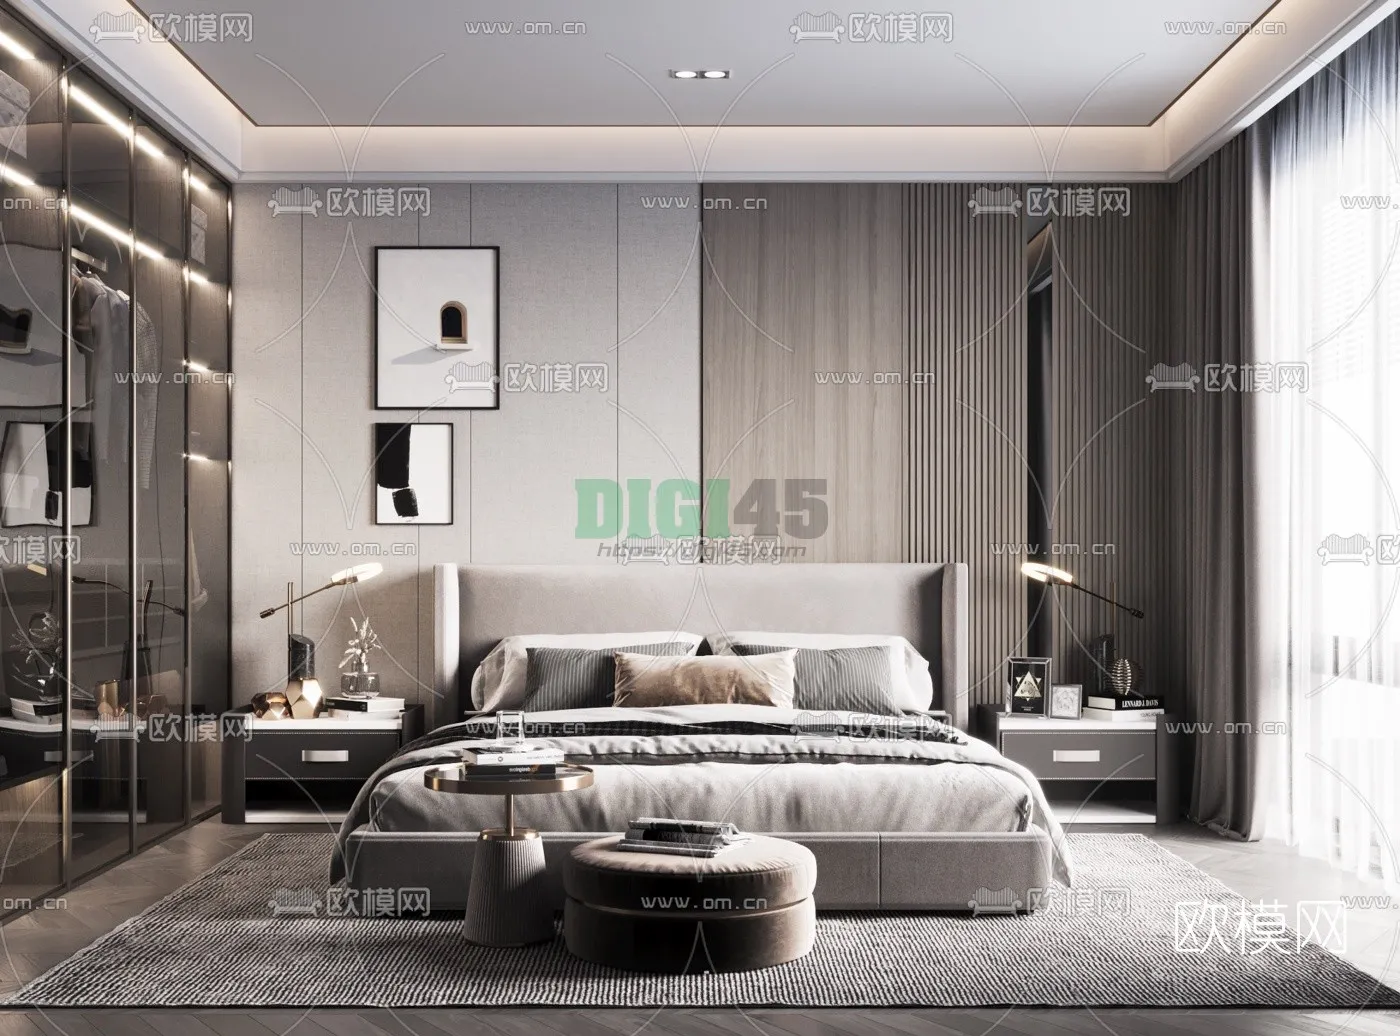 Bedroom 3D Scenes – 1087